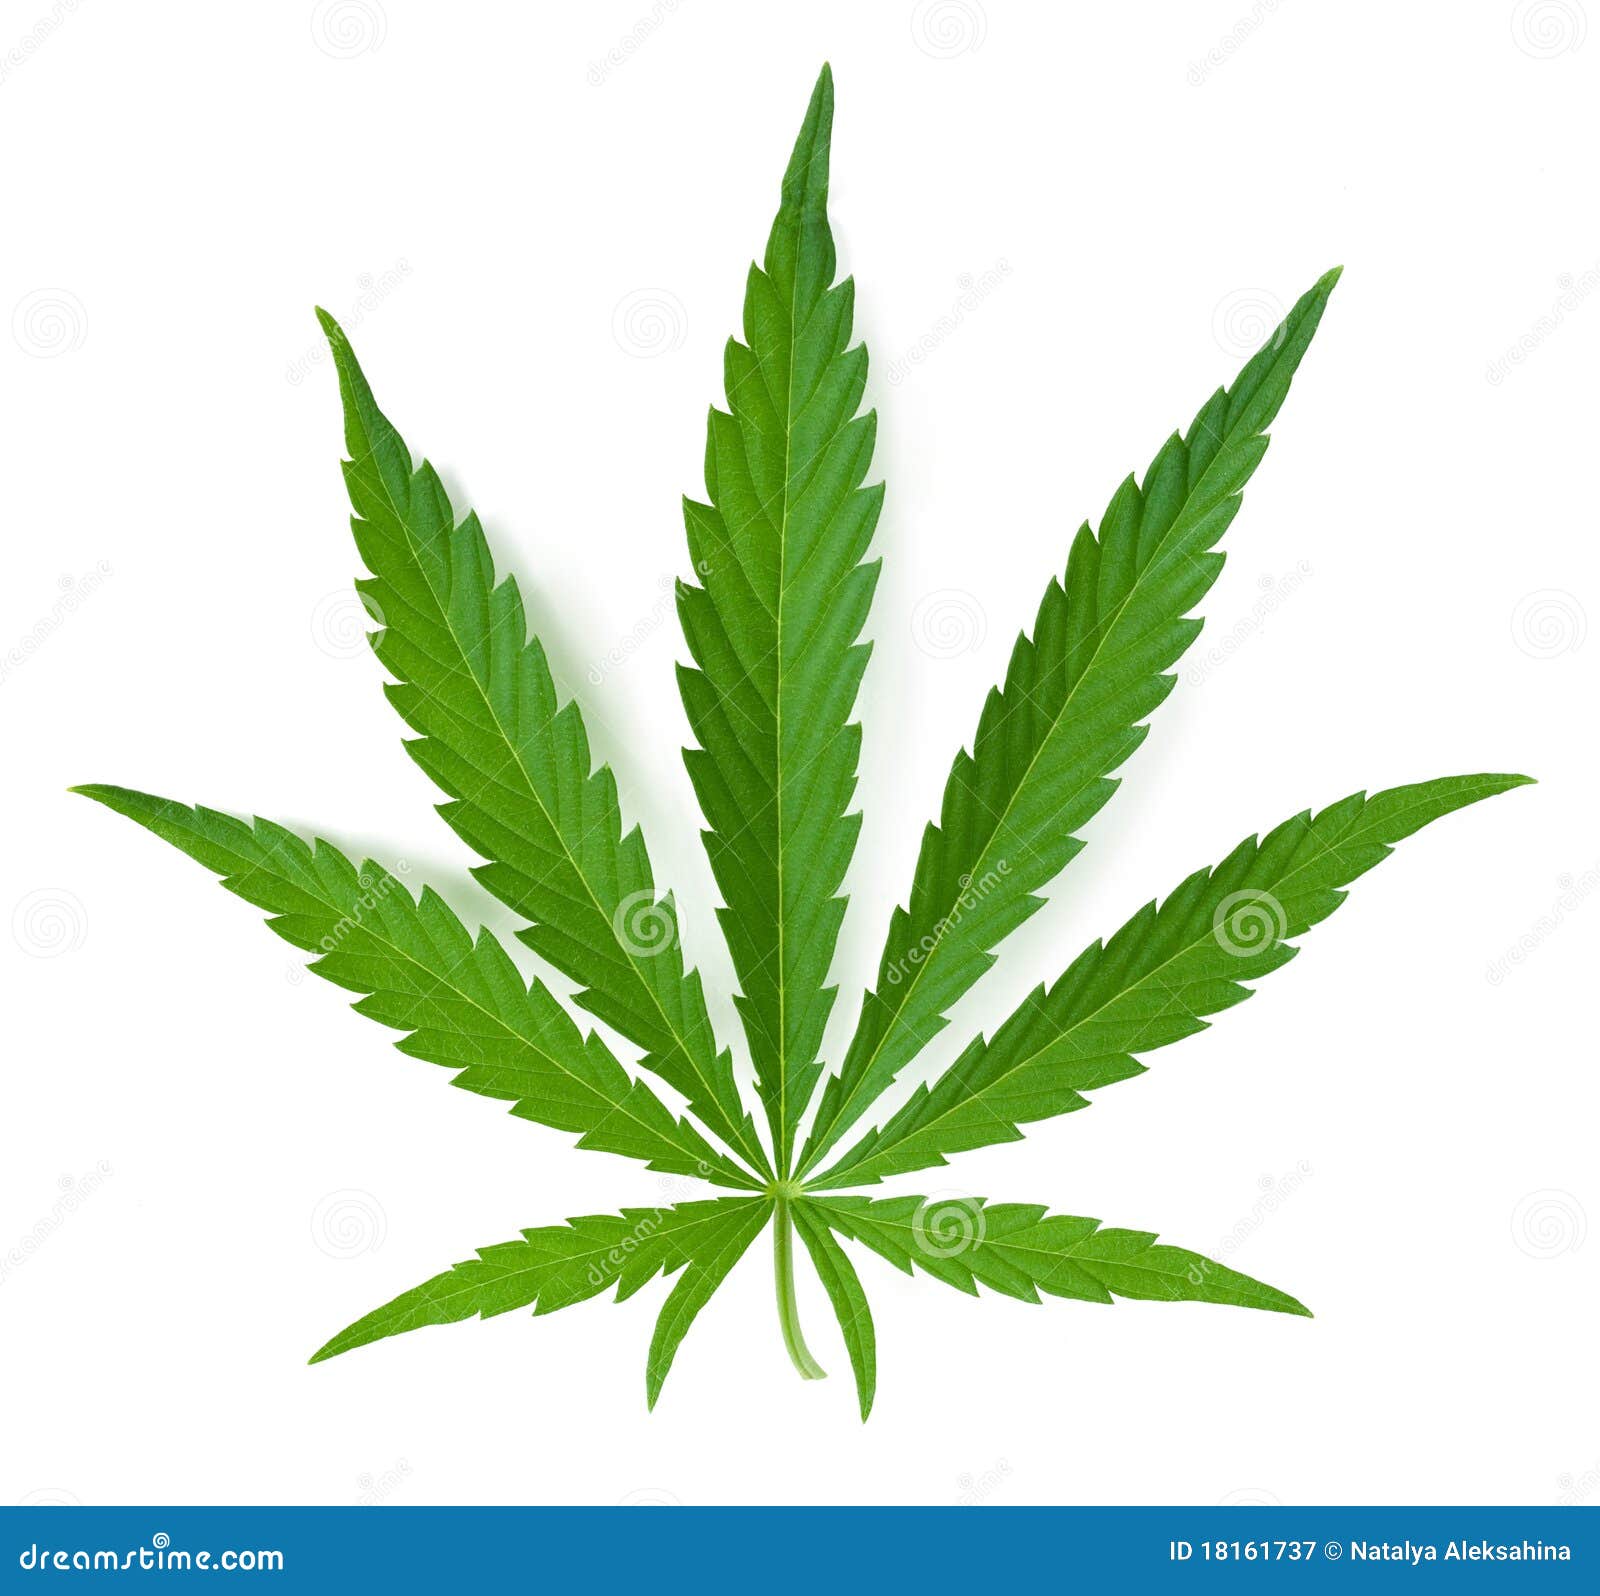 Фотографии листья конопли лист марихуаны похож на лист